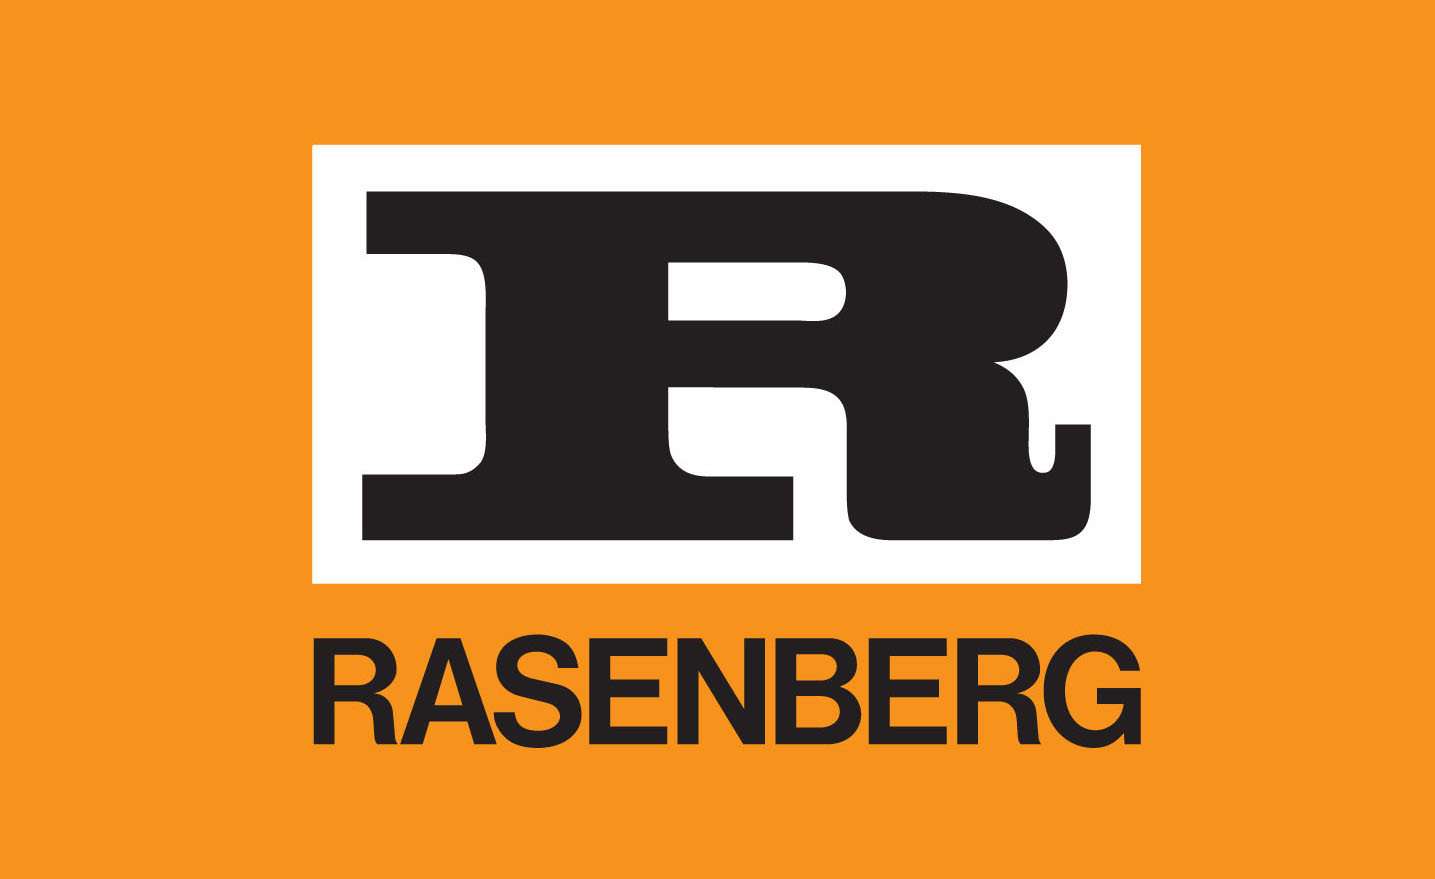 Rasenberg start met kabels en leidingen